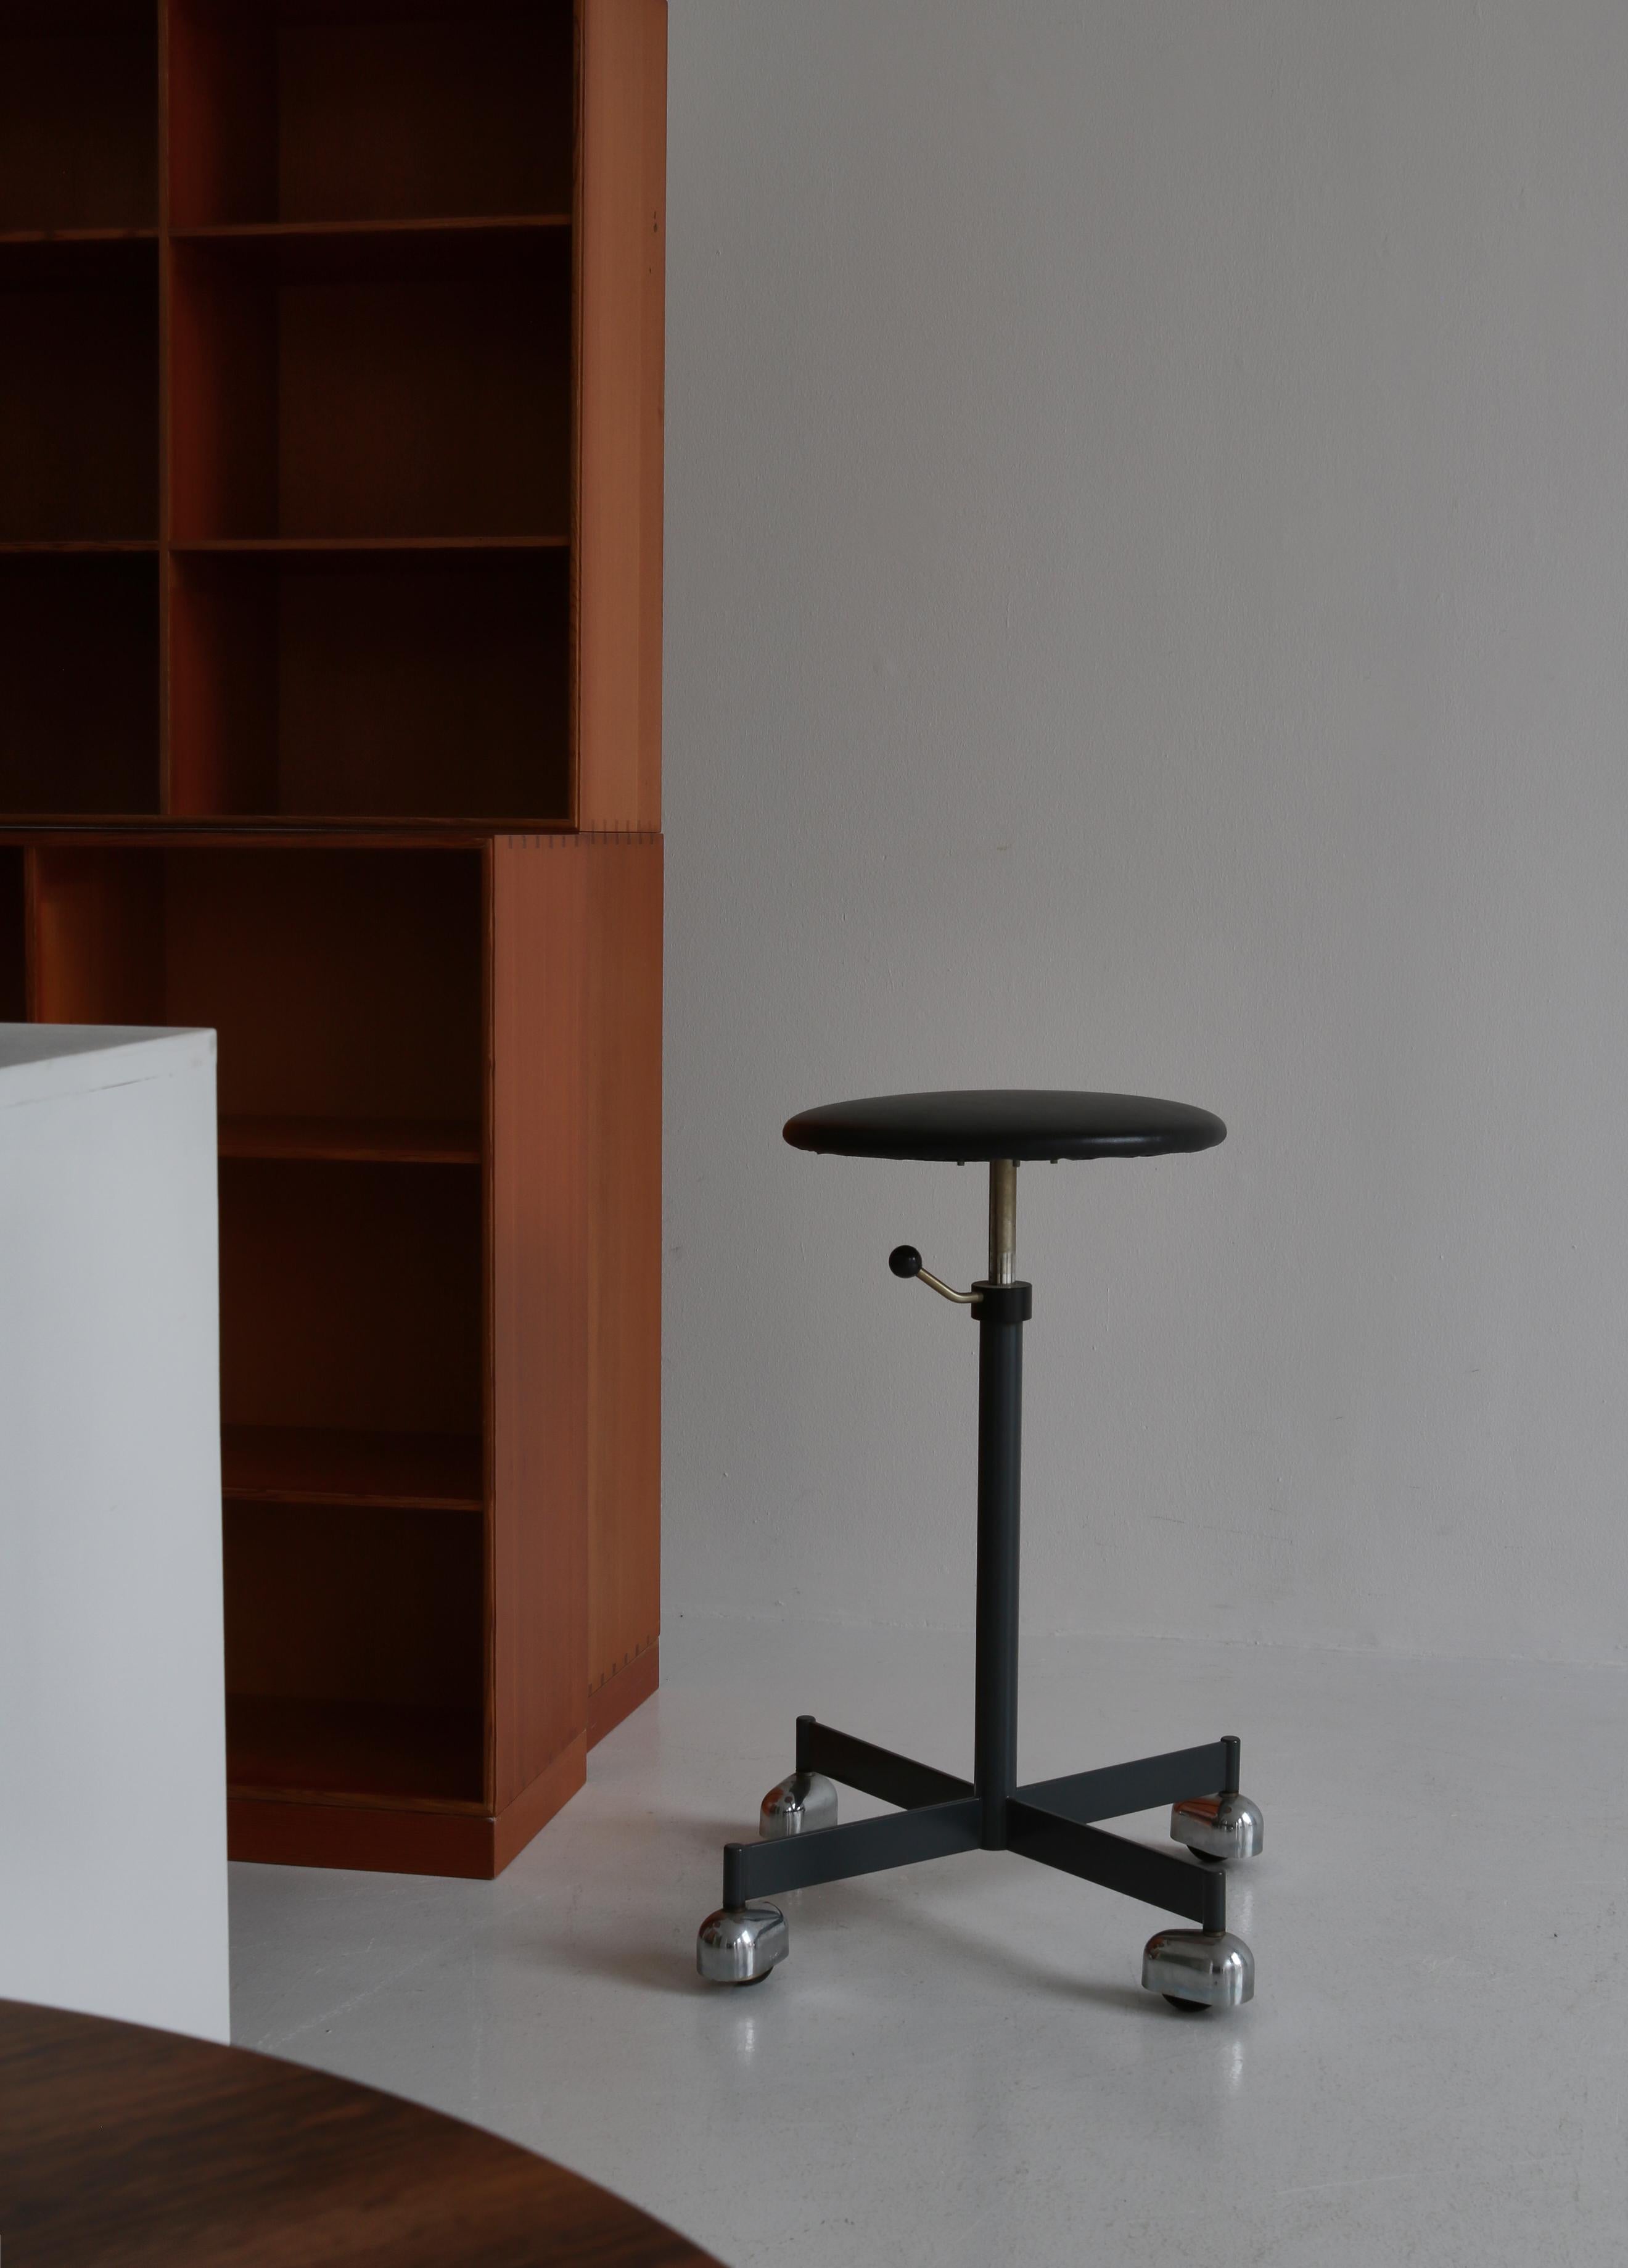 Vintage Bürodrehhocker aus Stahl und Leder, hergestellt von KEVI, Dänemark in den 1960er Jahren. Der Stuhl kann in der Höhe verstellt werden. Dieses Modell wurde in begrenzter Stückzahl produziert und ist ein seltener Fund.

Provenienz:
Gekauft aus